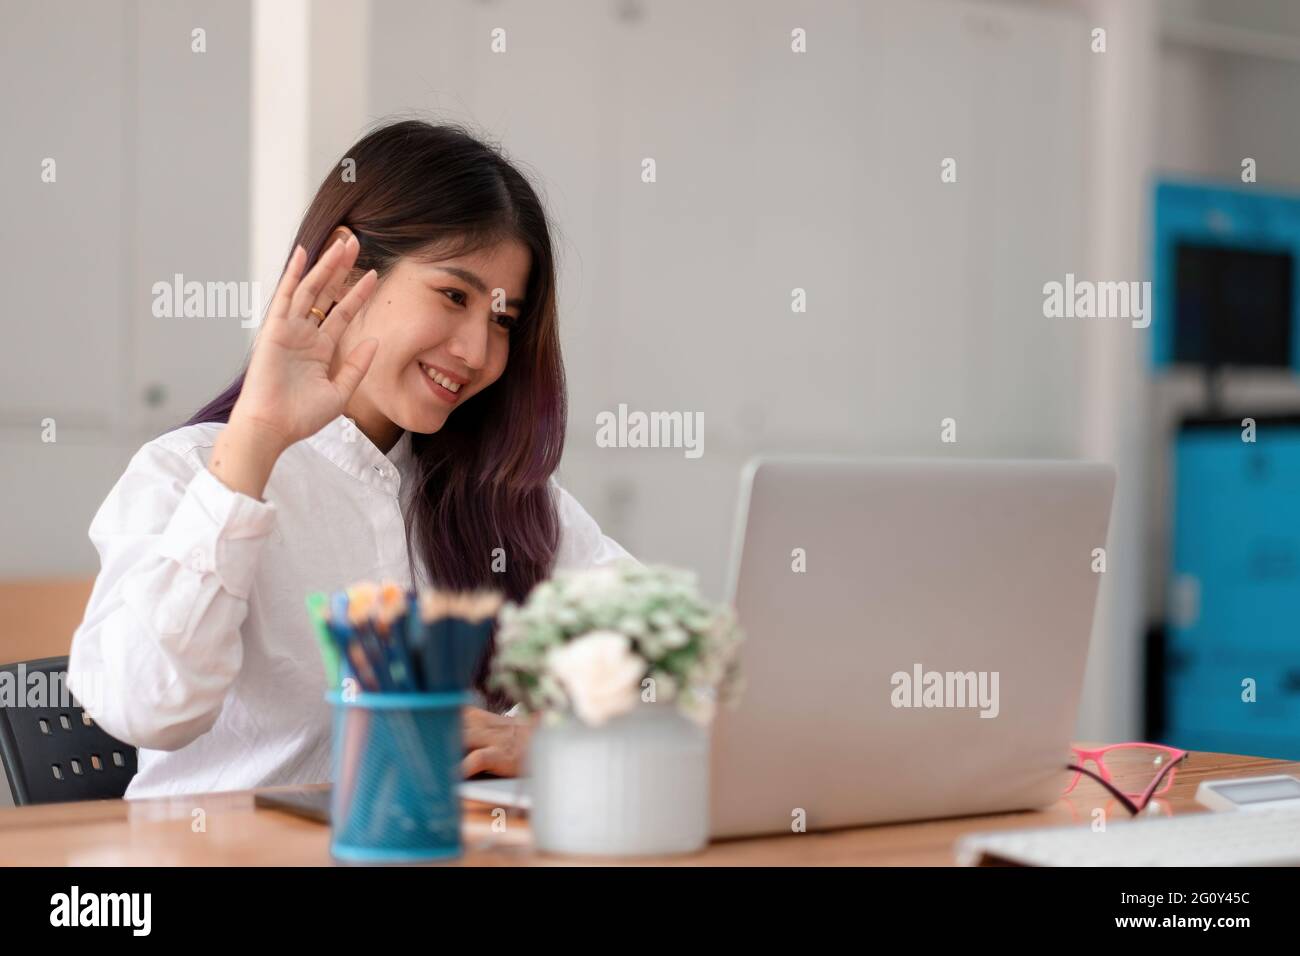 Immagine di una donna asiatica felice che indossa una camicia bianca sorridente e sventolante al computer portatile, mentre parla o chatti in videochiamata in ufficio Foto Stock